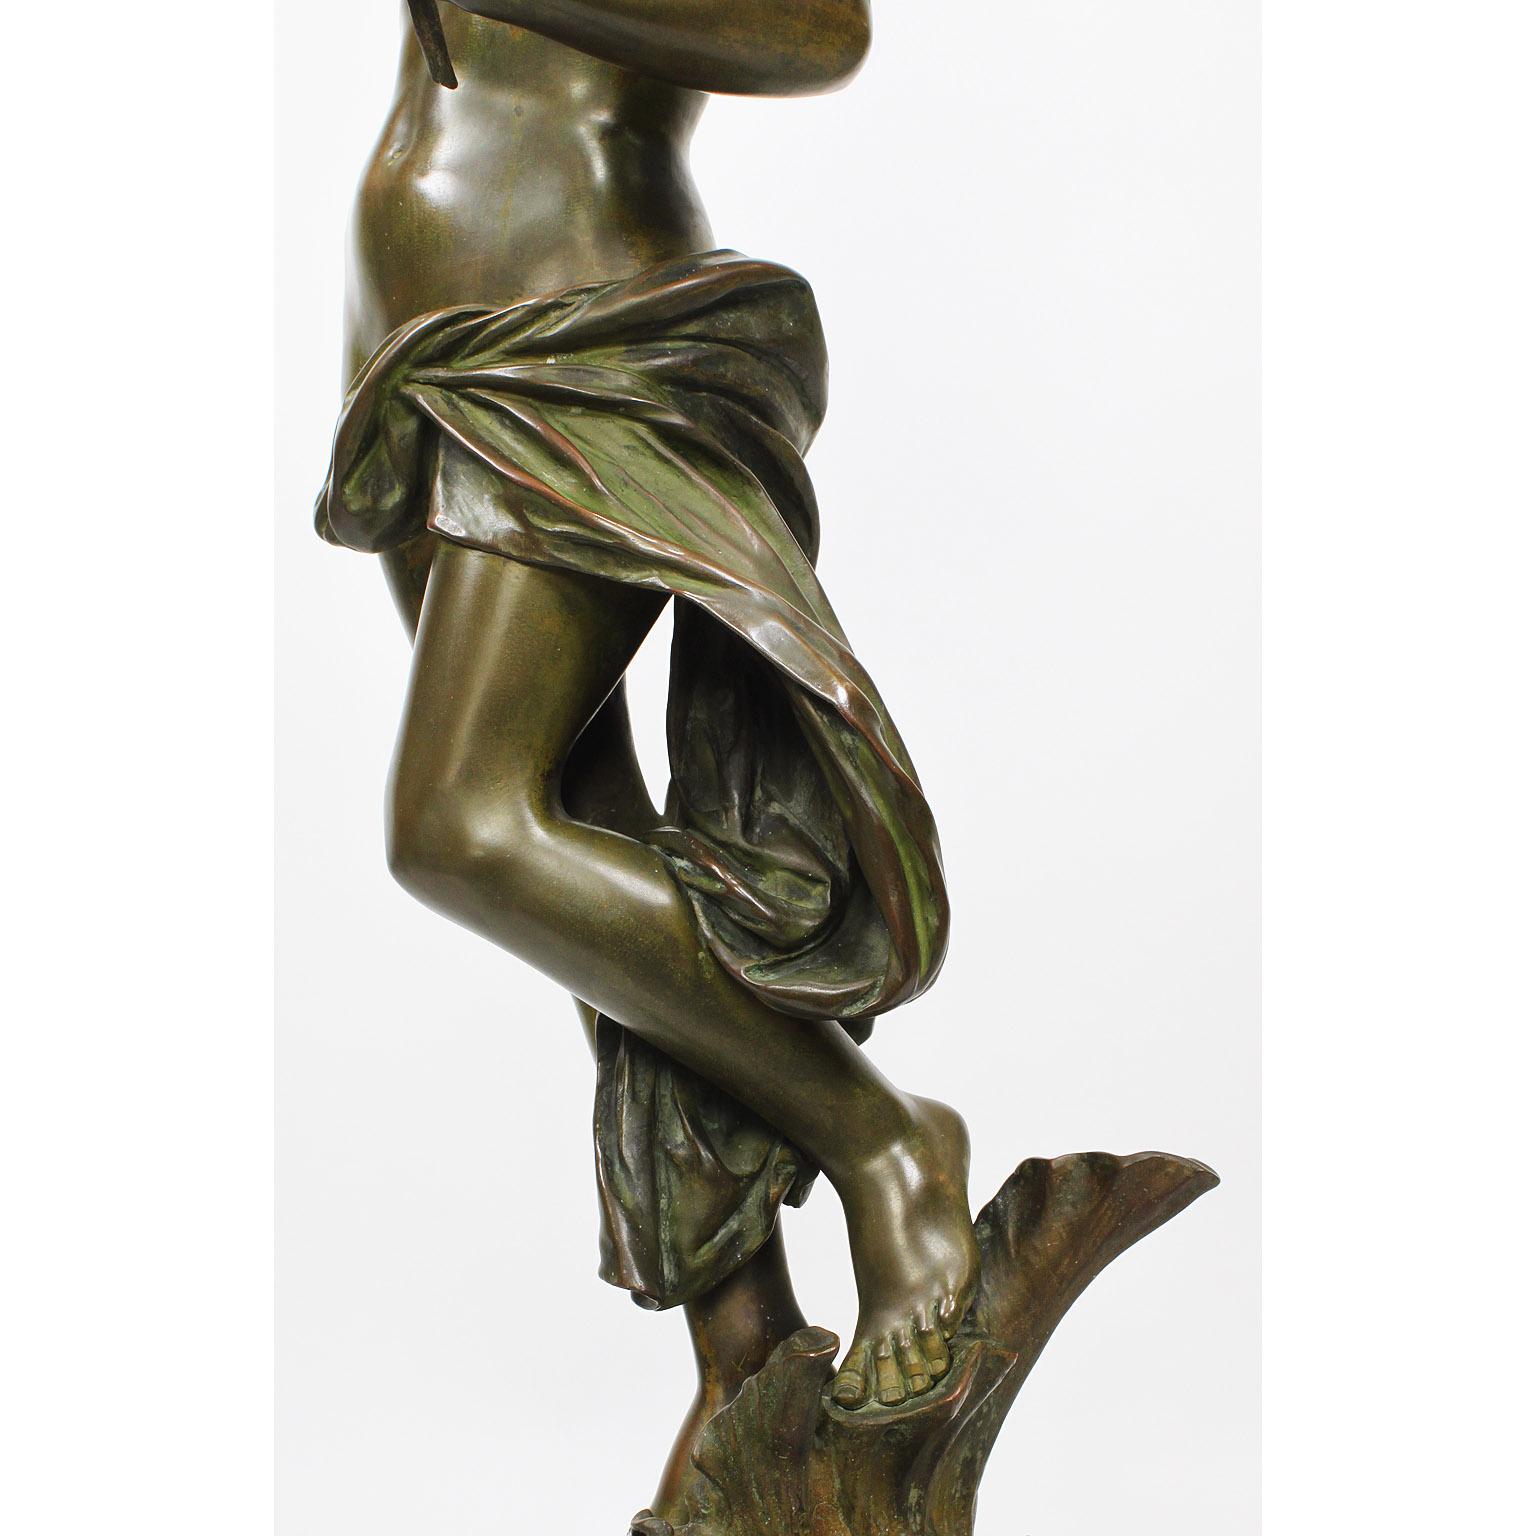 Luca Madrassi, a Fine Italian Bronze of a Nude 